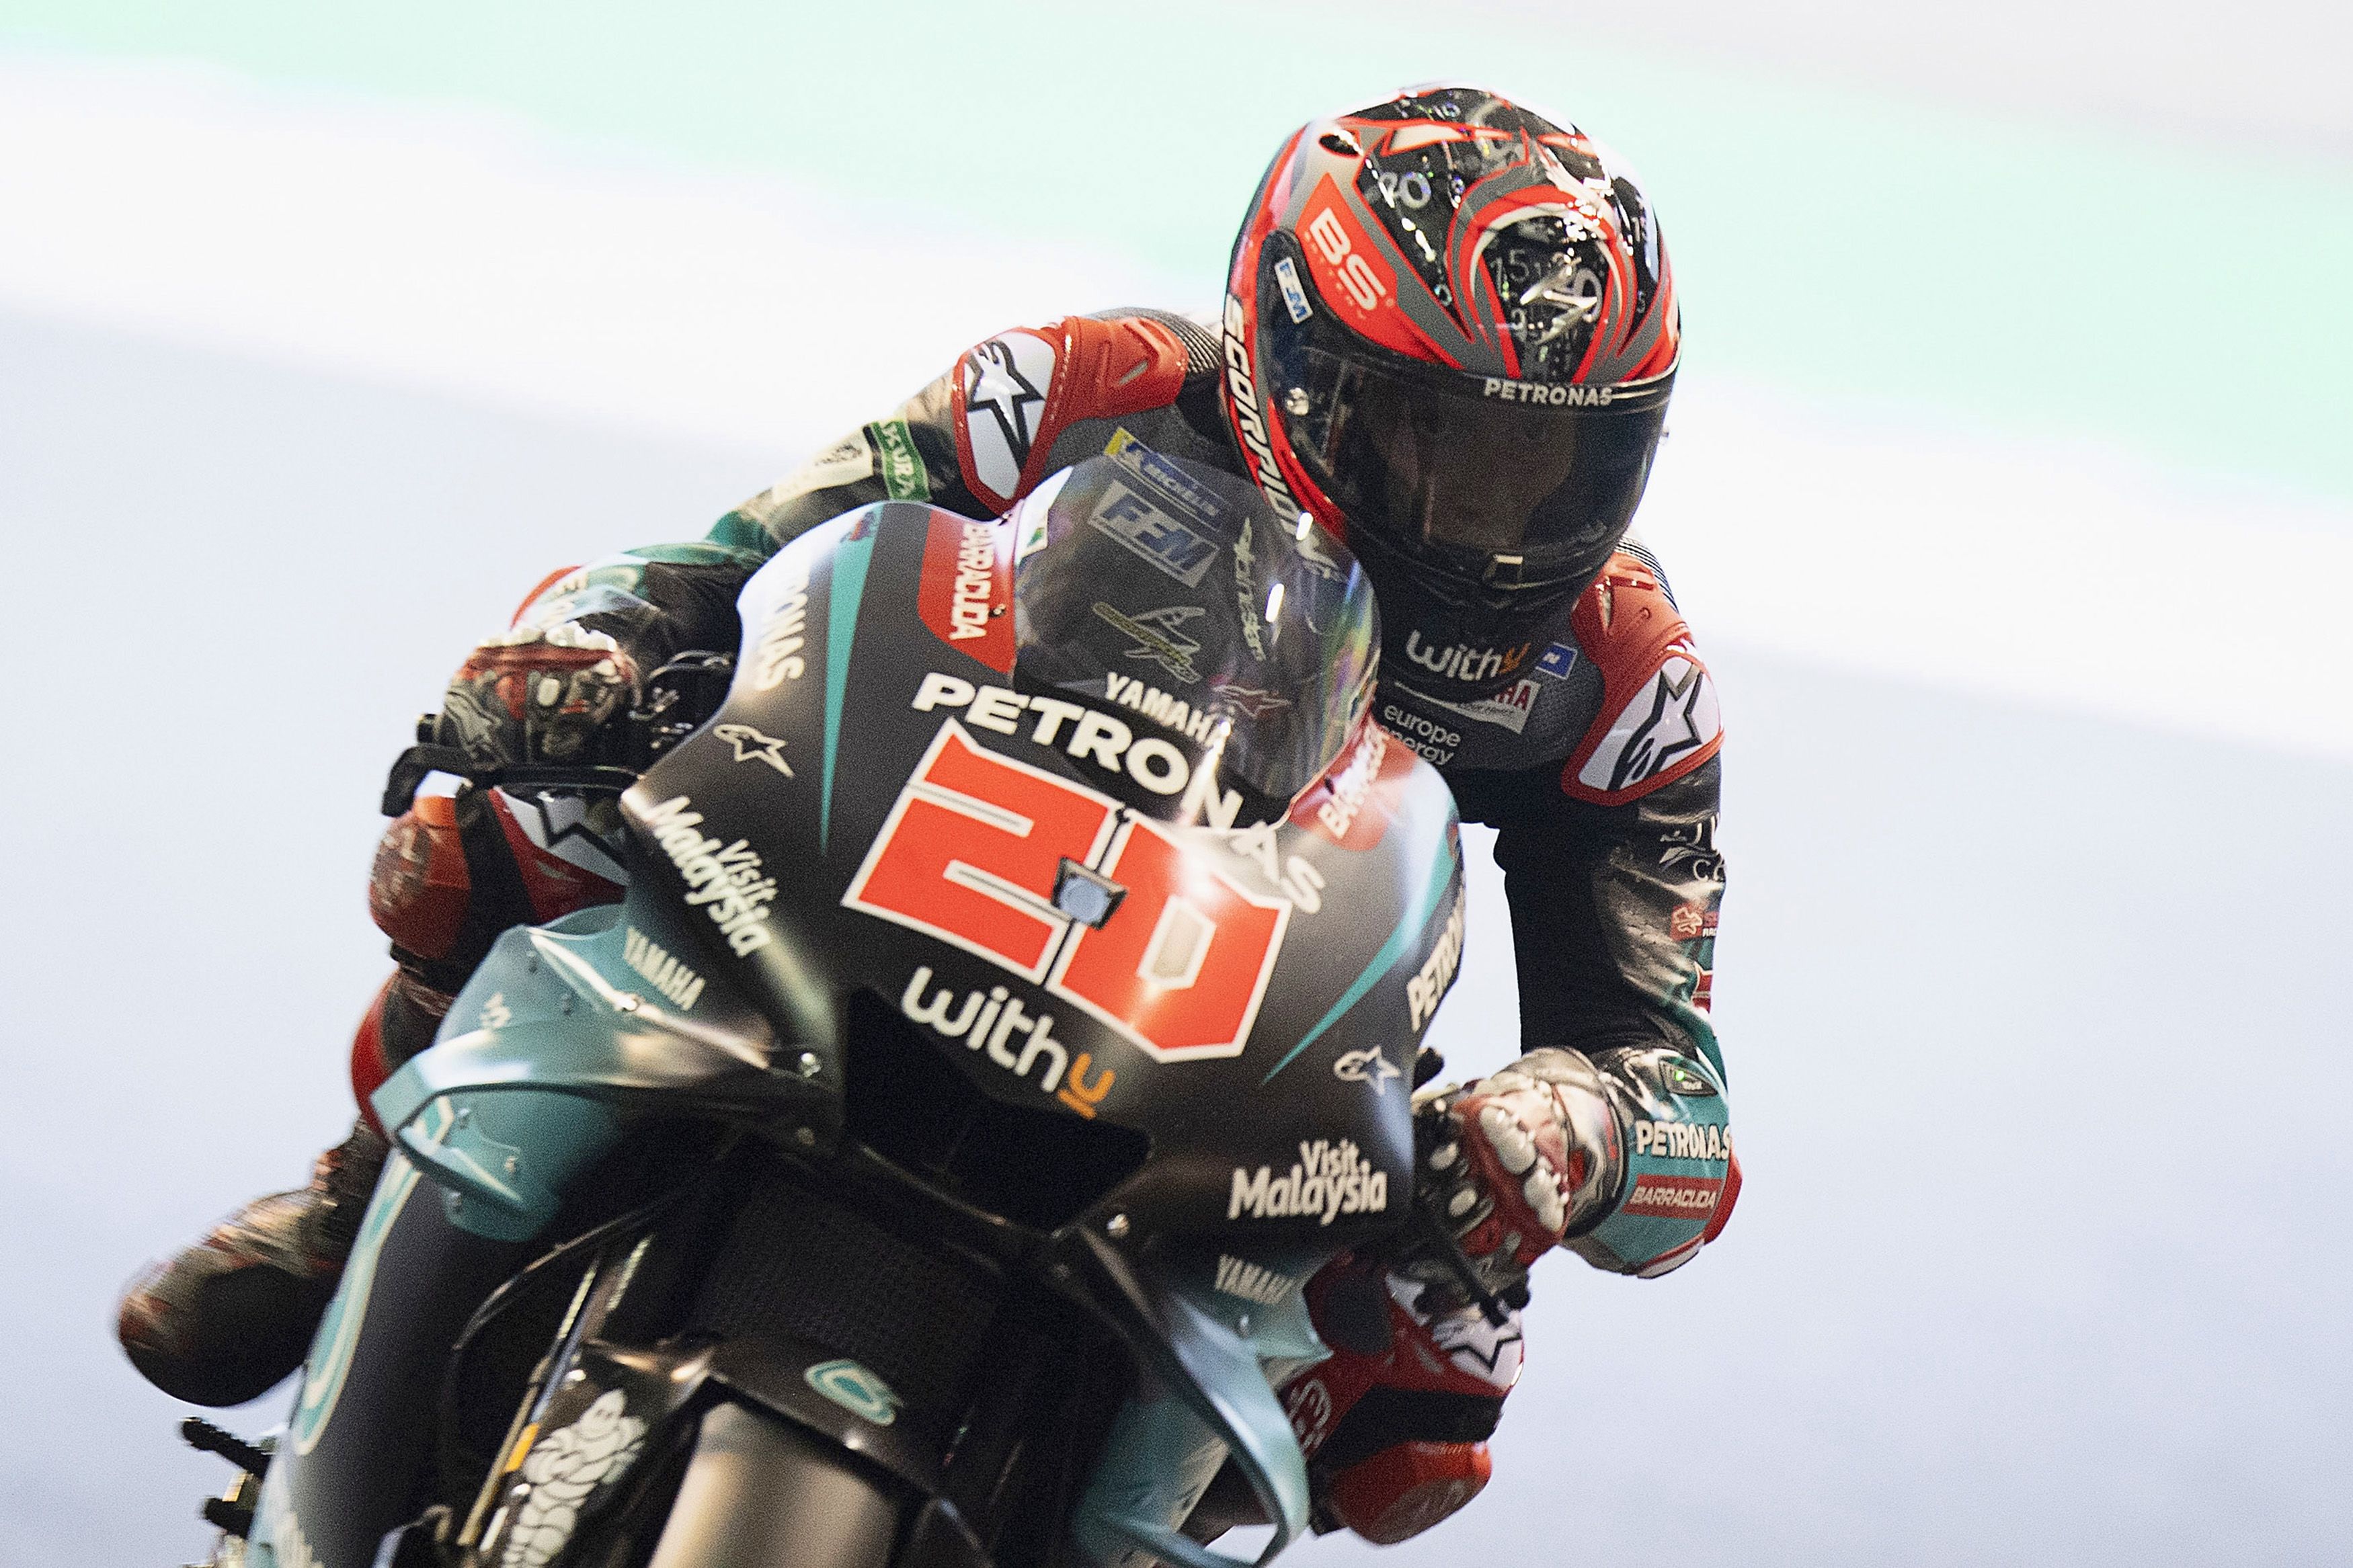 Fabio Quartararo initially found it hard to 'accept' MotoGP slump